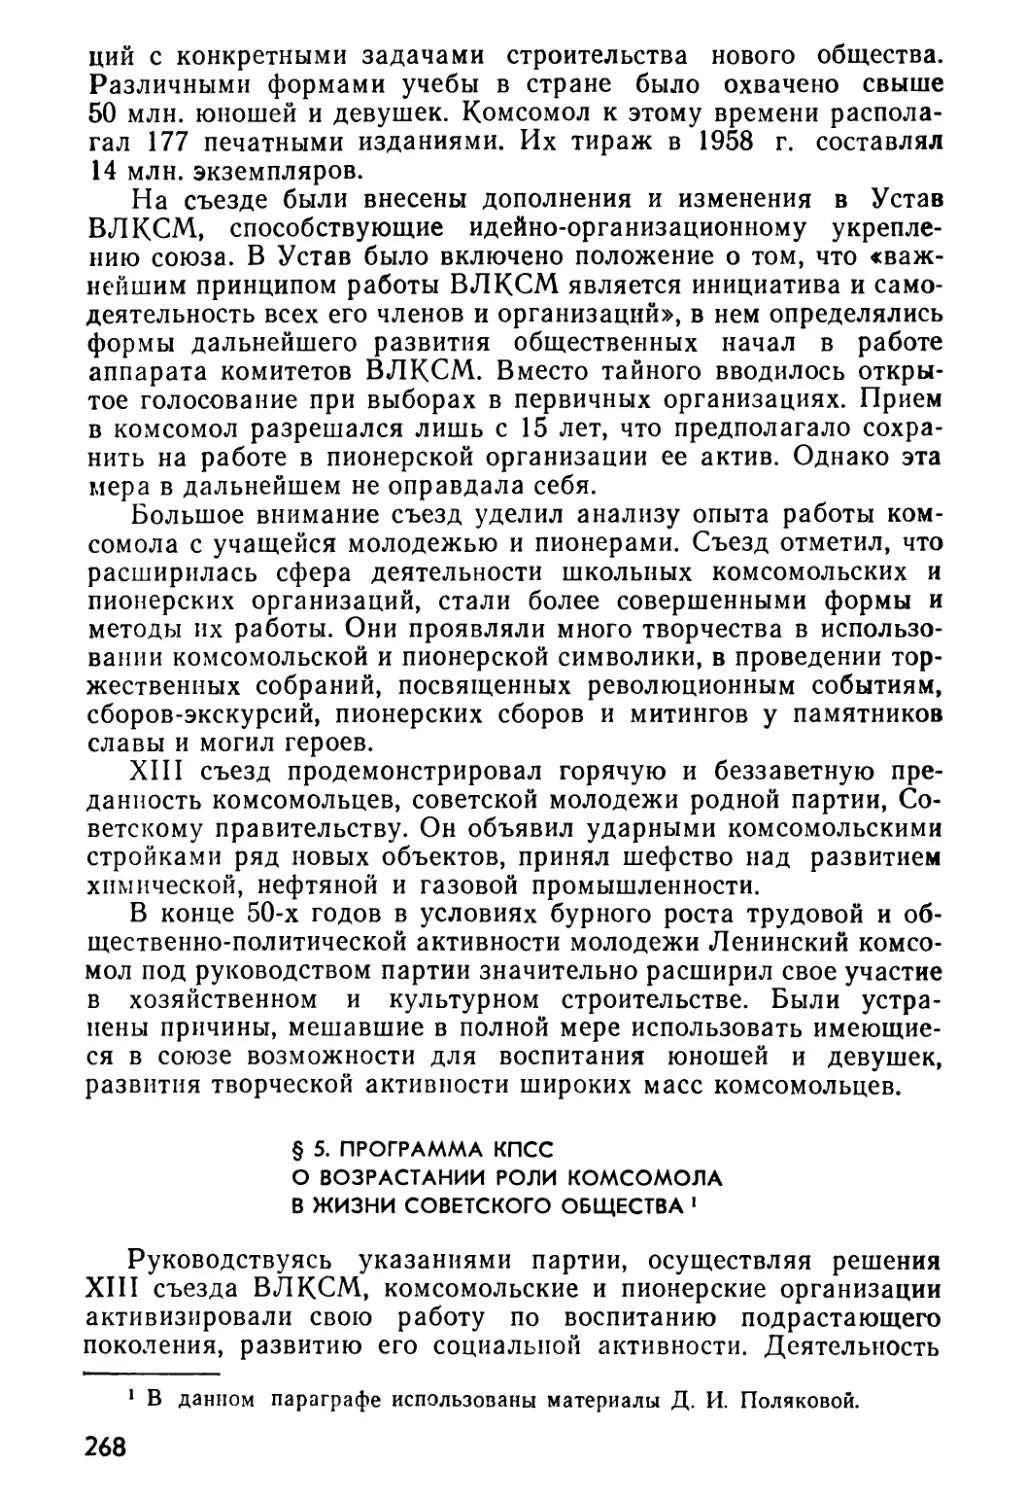 § 5. Программа КПСС о возрастании роли комсомола в жизни советского общества